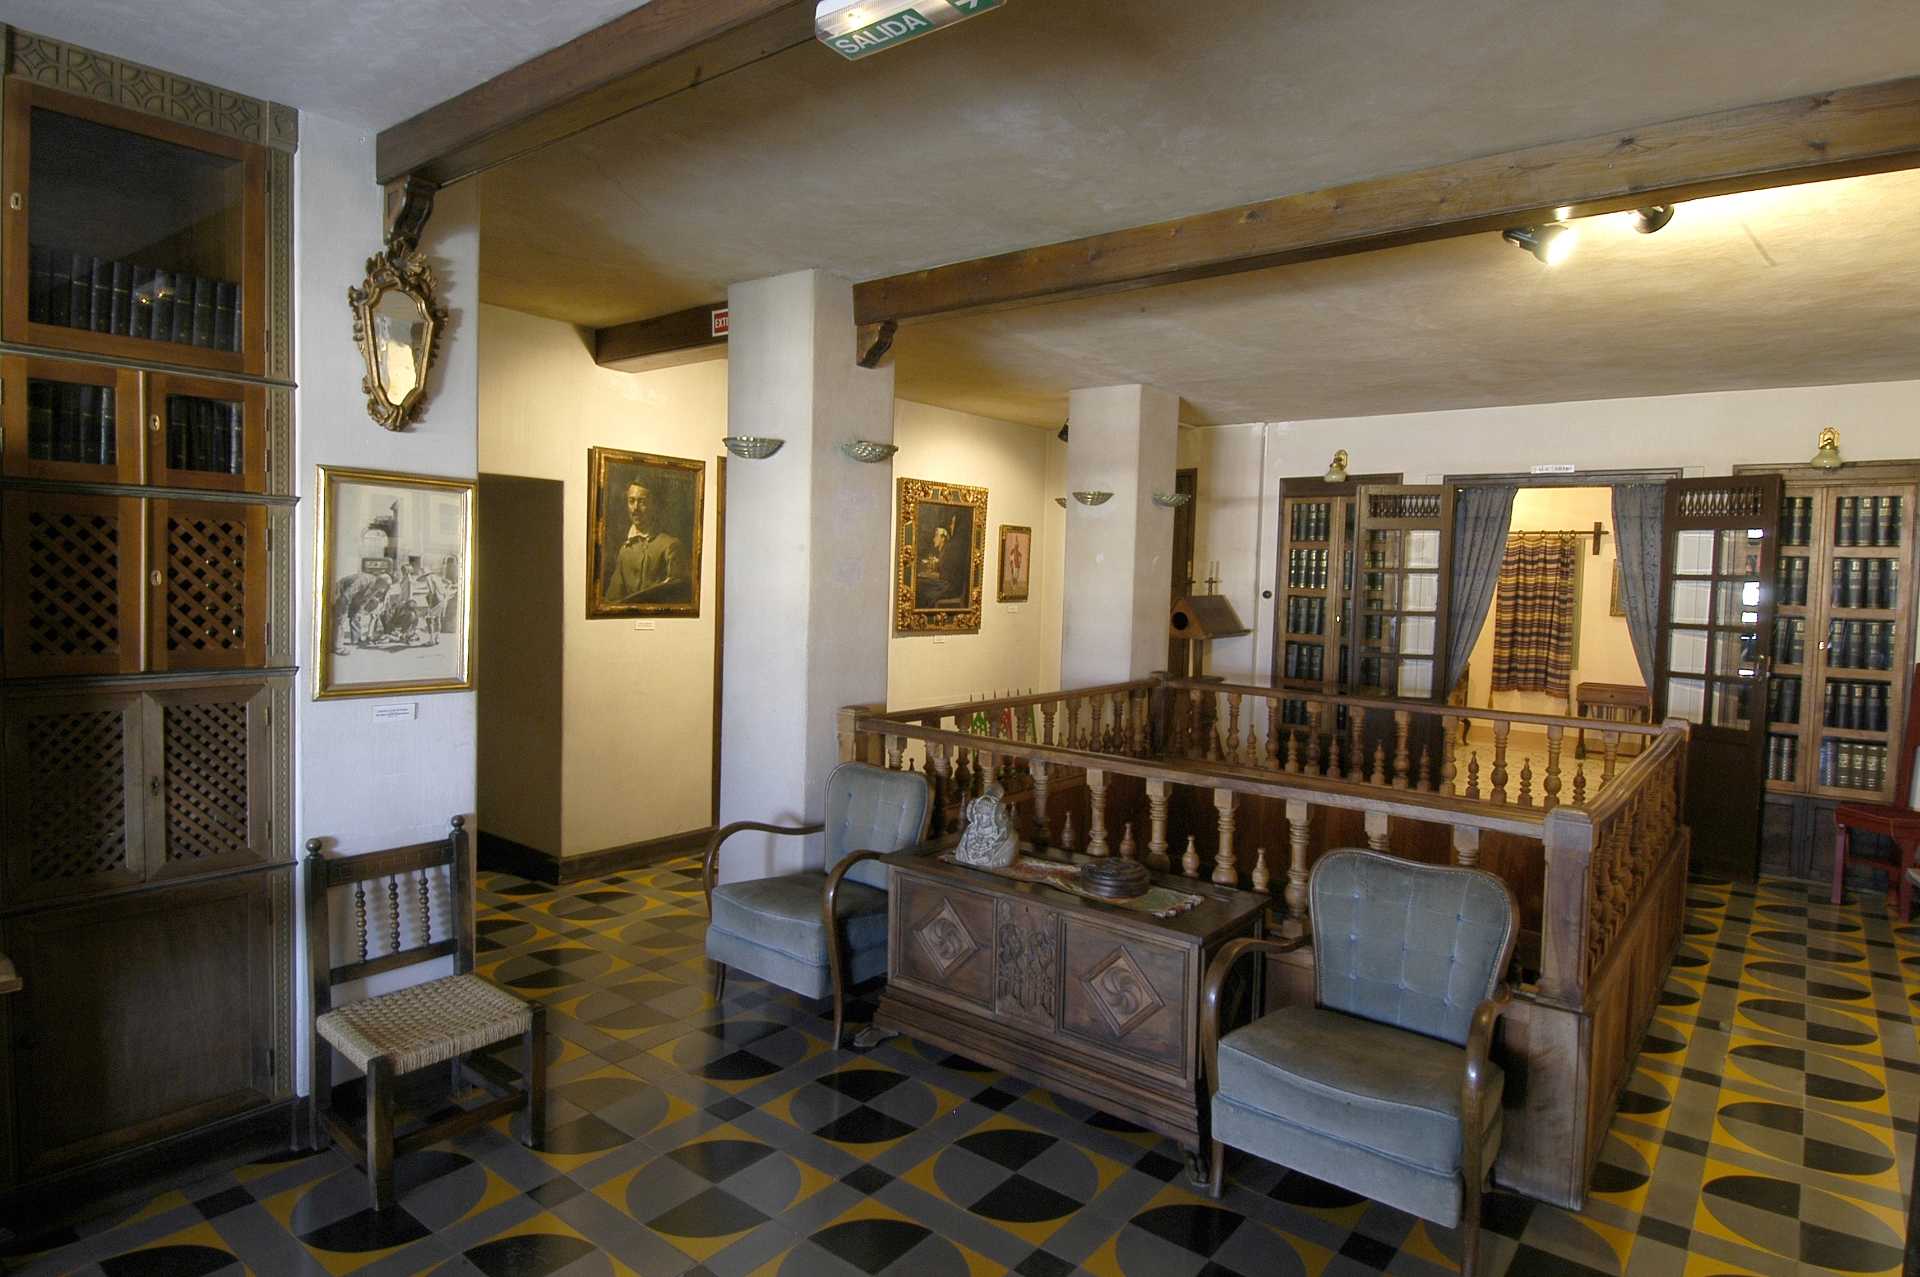 Casa Museu Jose Segrelles